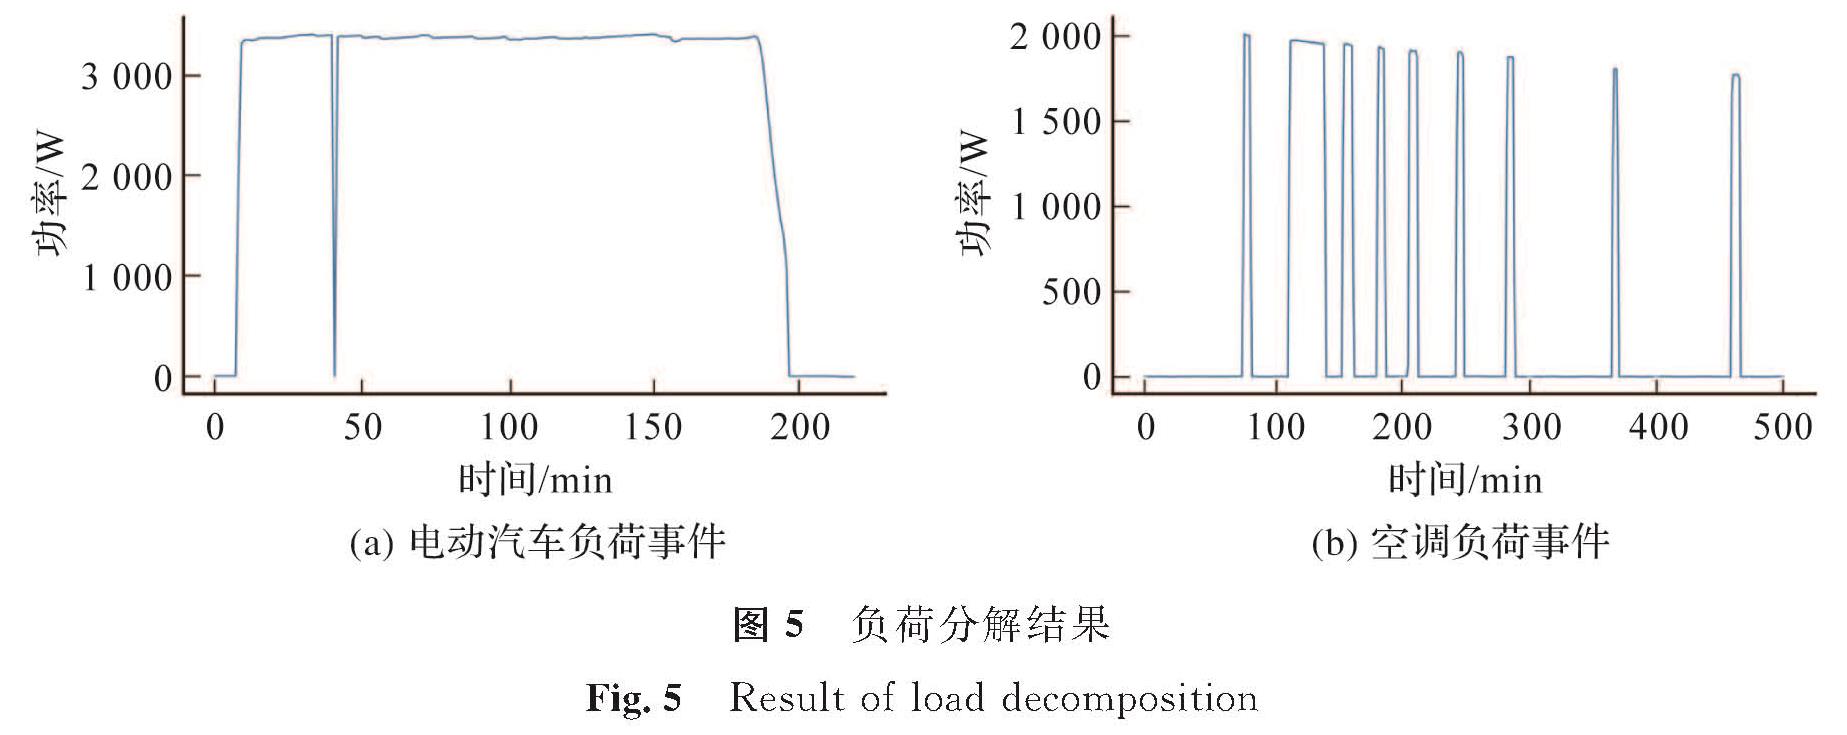 图5 负荷分解结果<br/>Fig.5 Result of load decomposition